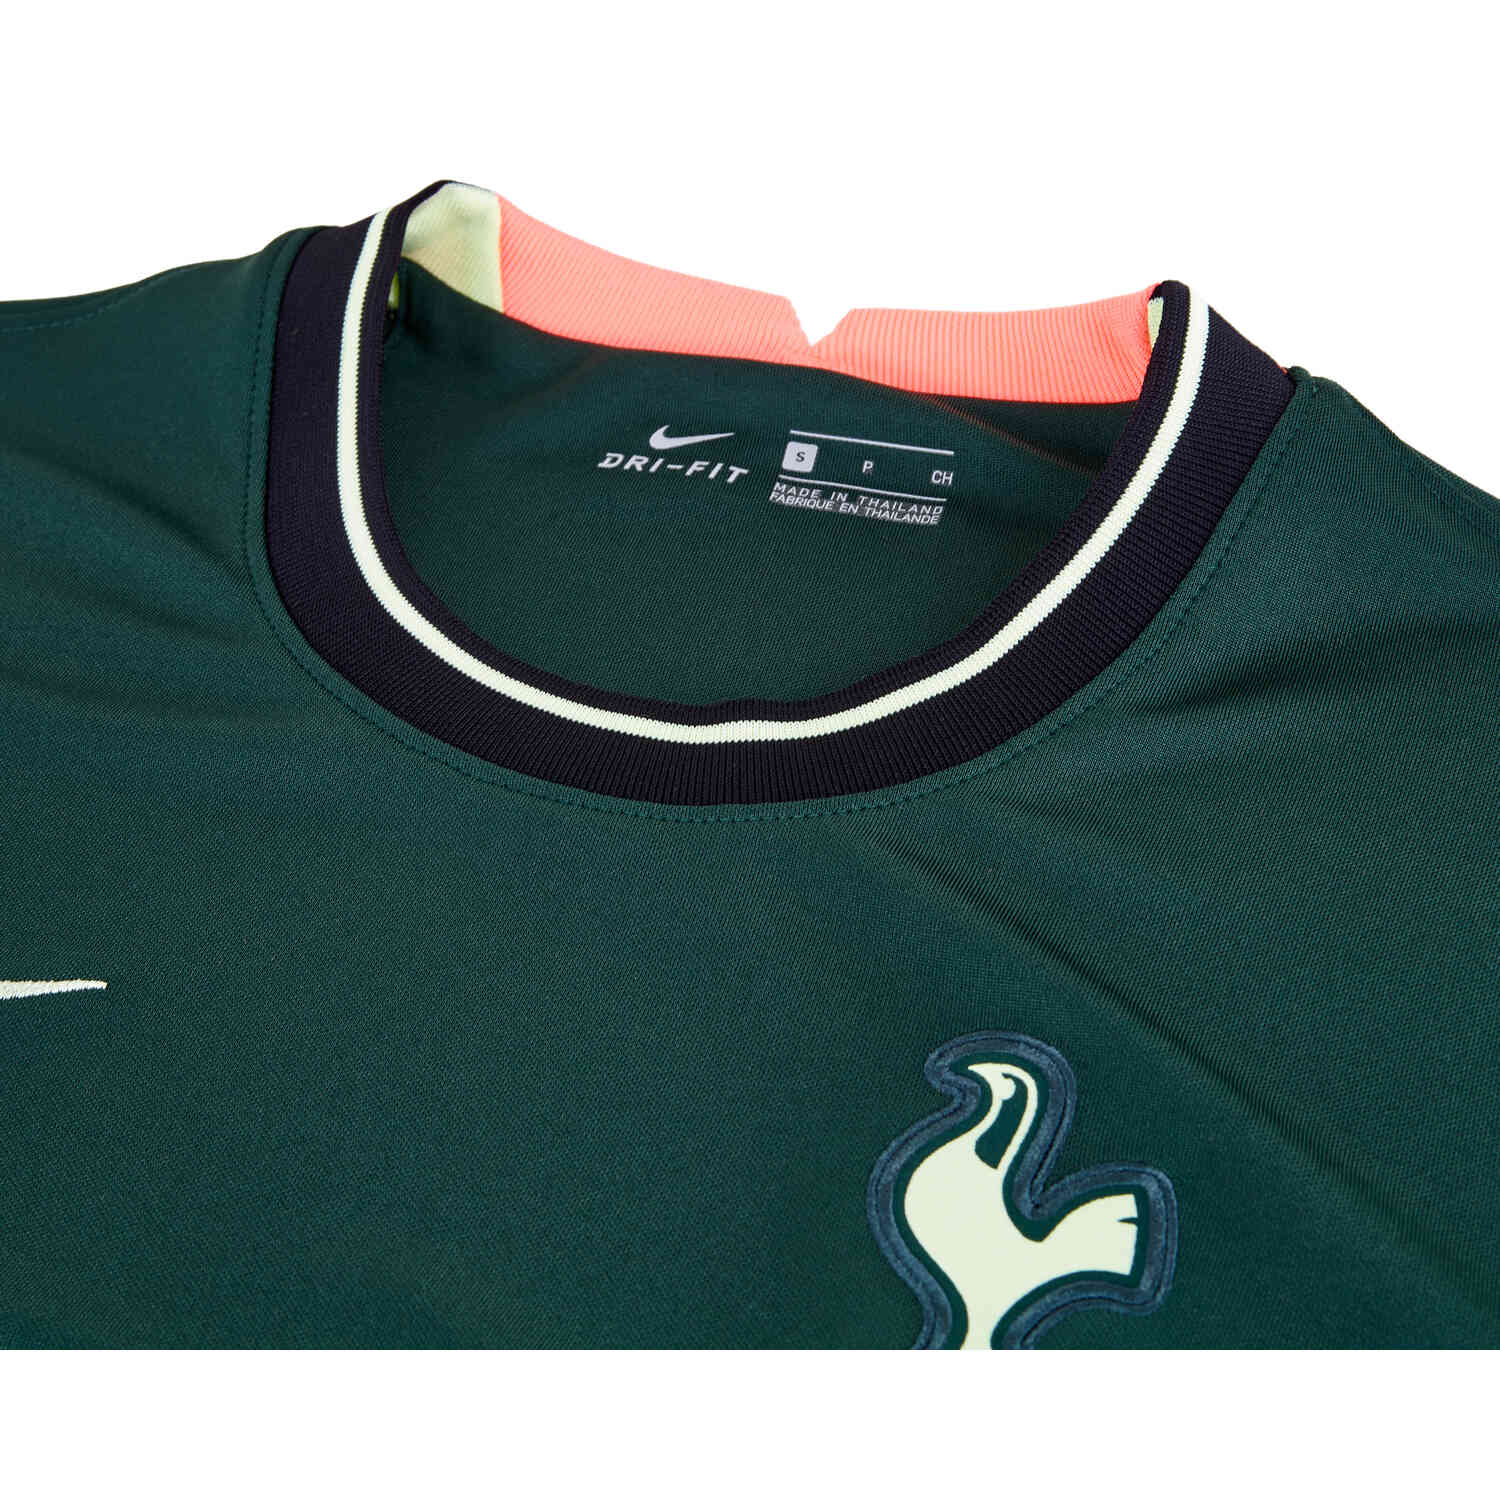 2021/22 Nike Tottenham Away Jersey - SoccerPro